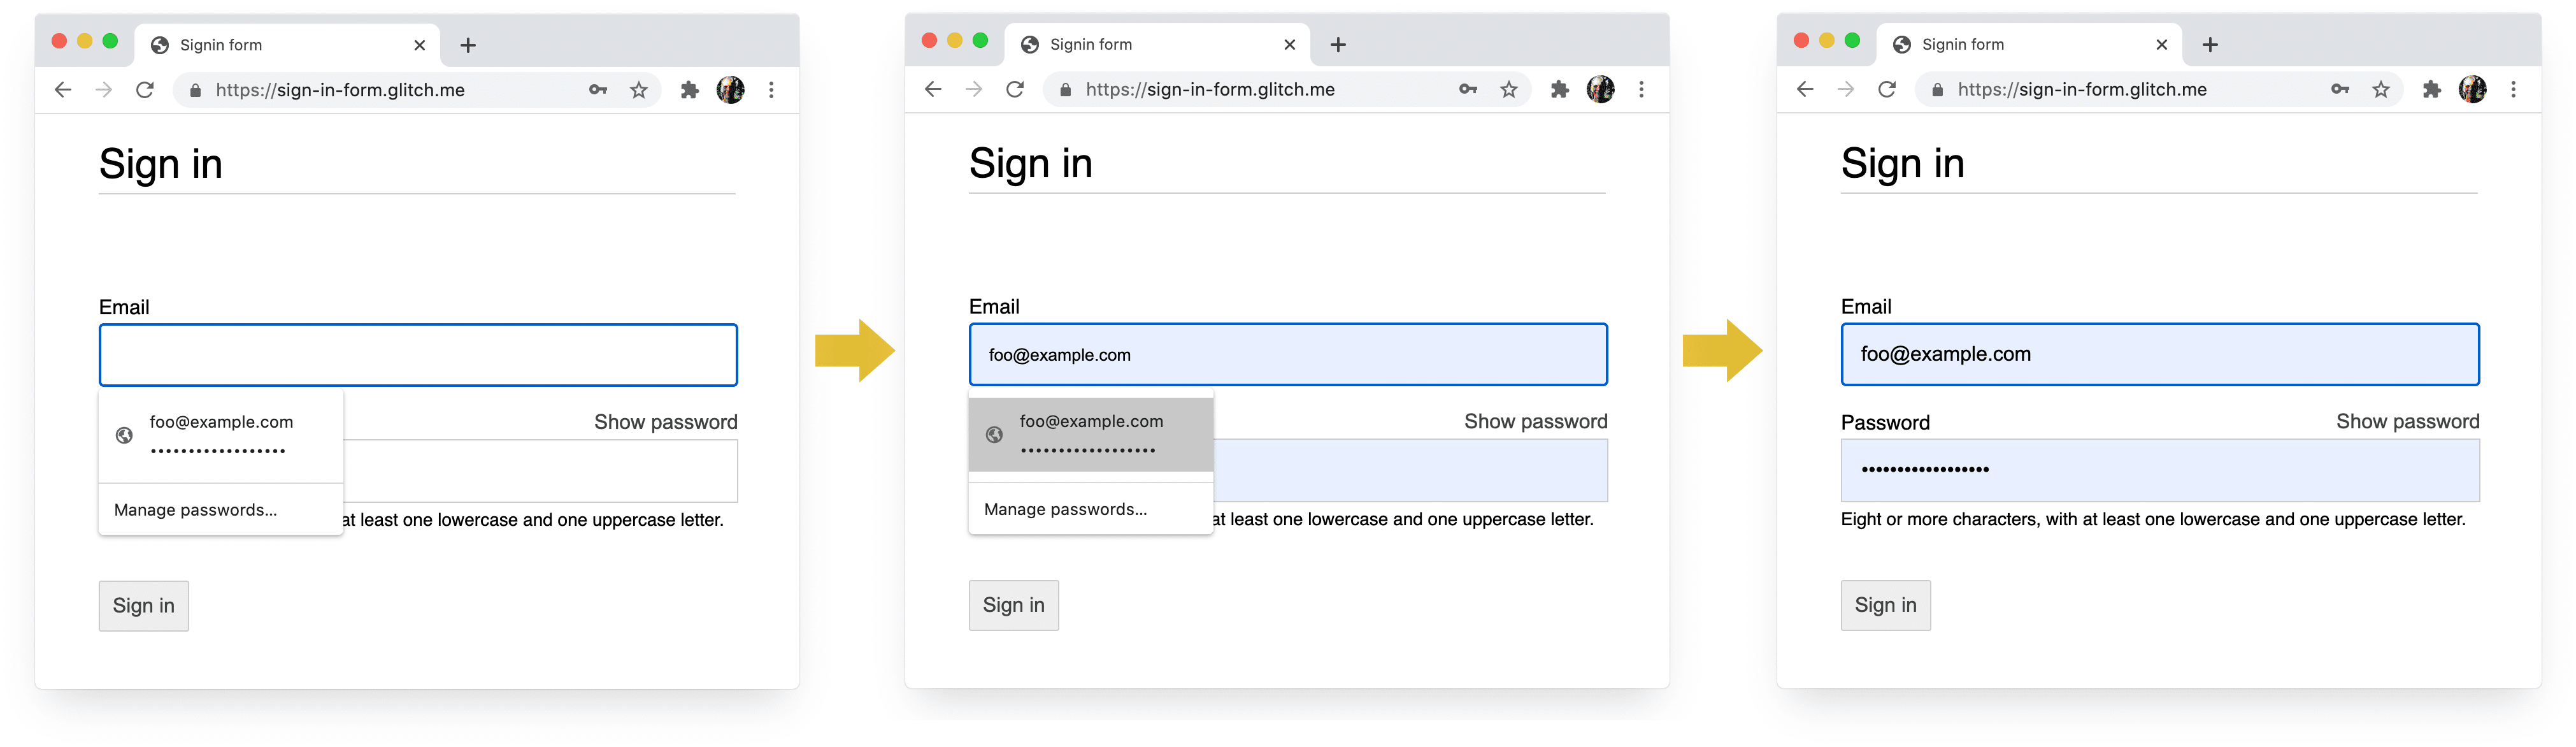 צילומי מסך של ארבעת השלבים של תהליך הכניסה ב-Chrome במחשב: השלמת אימייל, הצעת אימייל, מנהל סיסמאות, מילוי אוטומטי לאחר הבחירה.